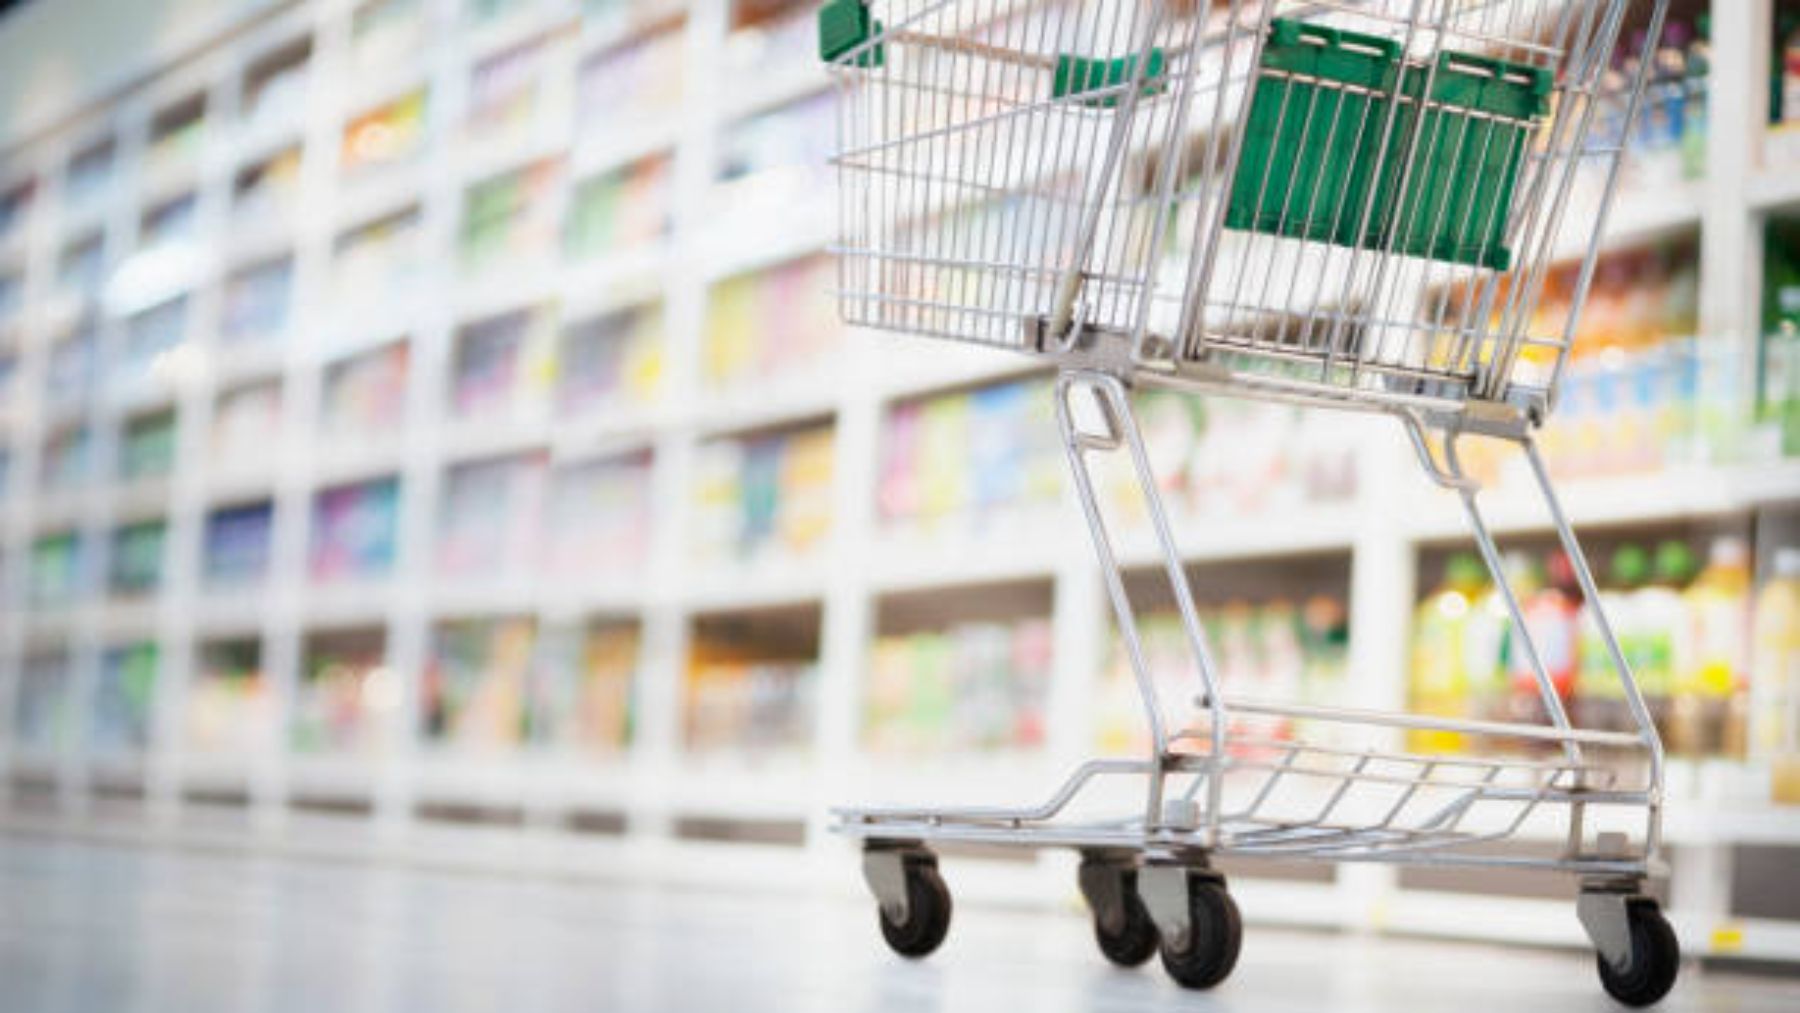 Auge y caída de DIA: oda al supermercado que cambió para siempre la compra  de los españoles